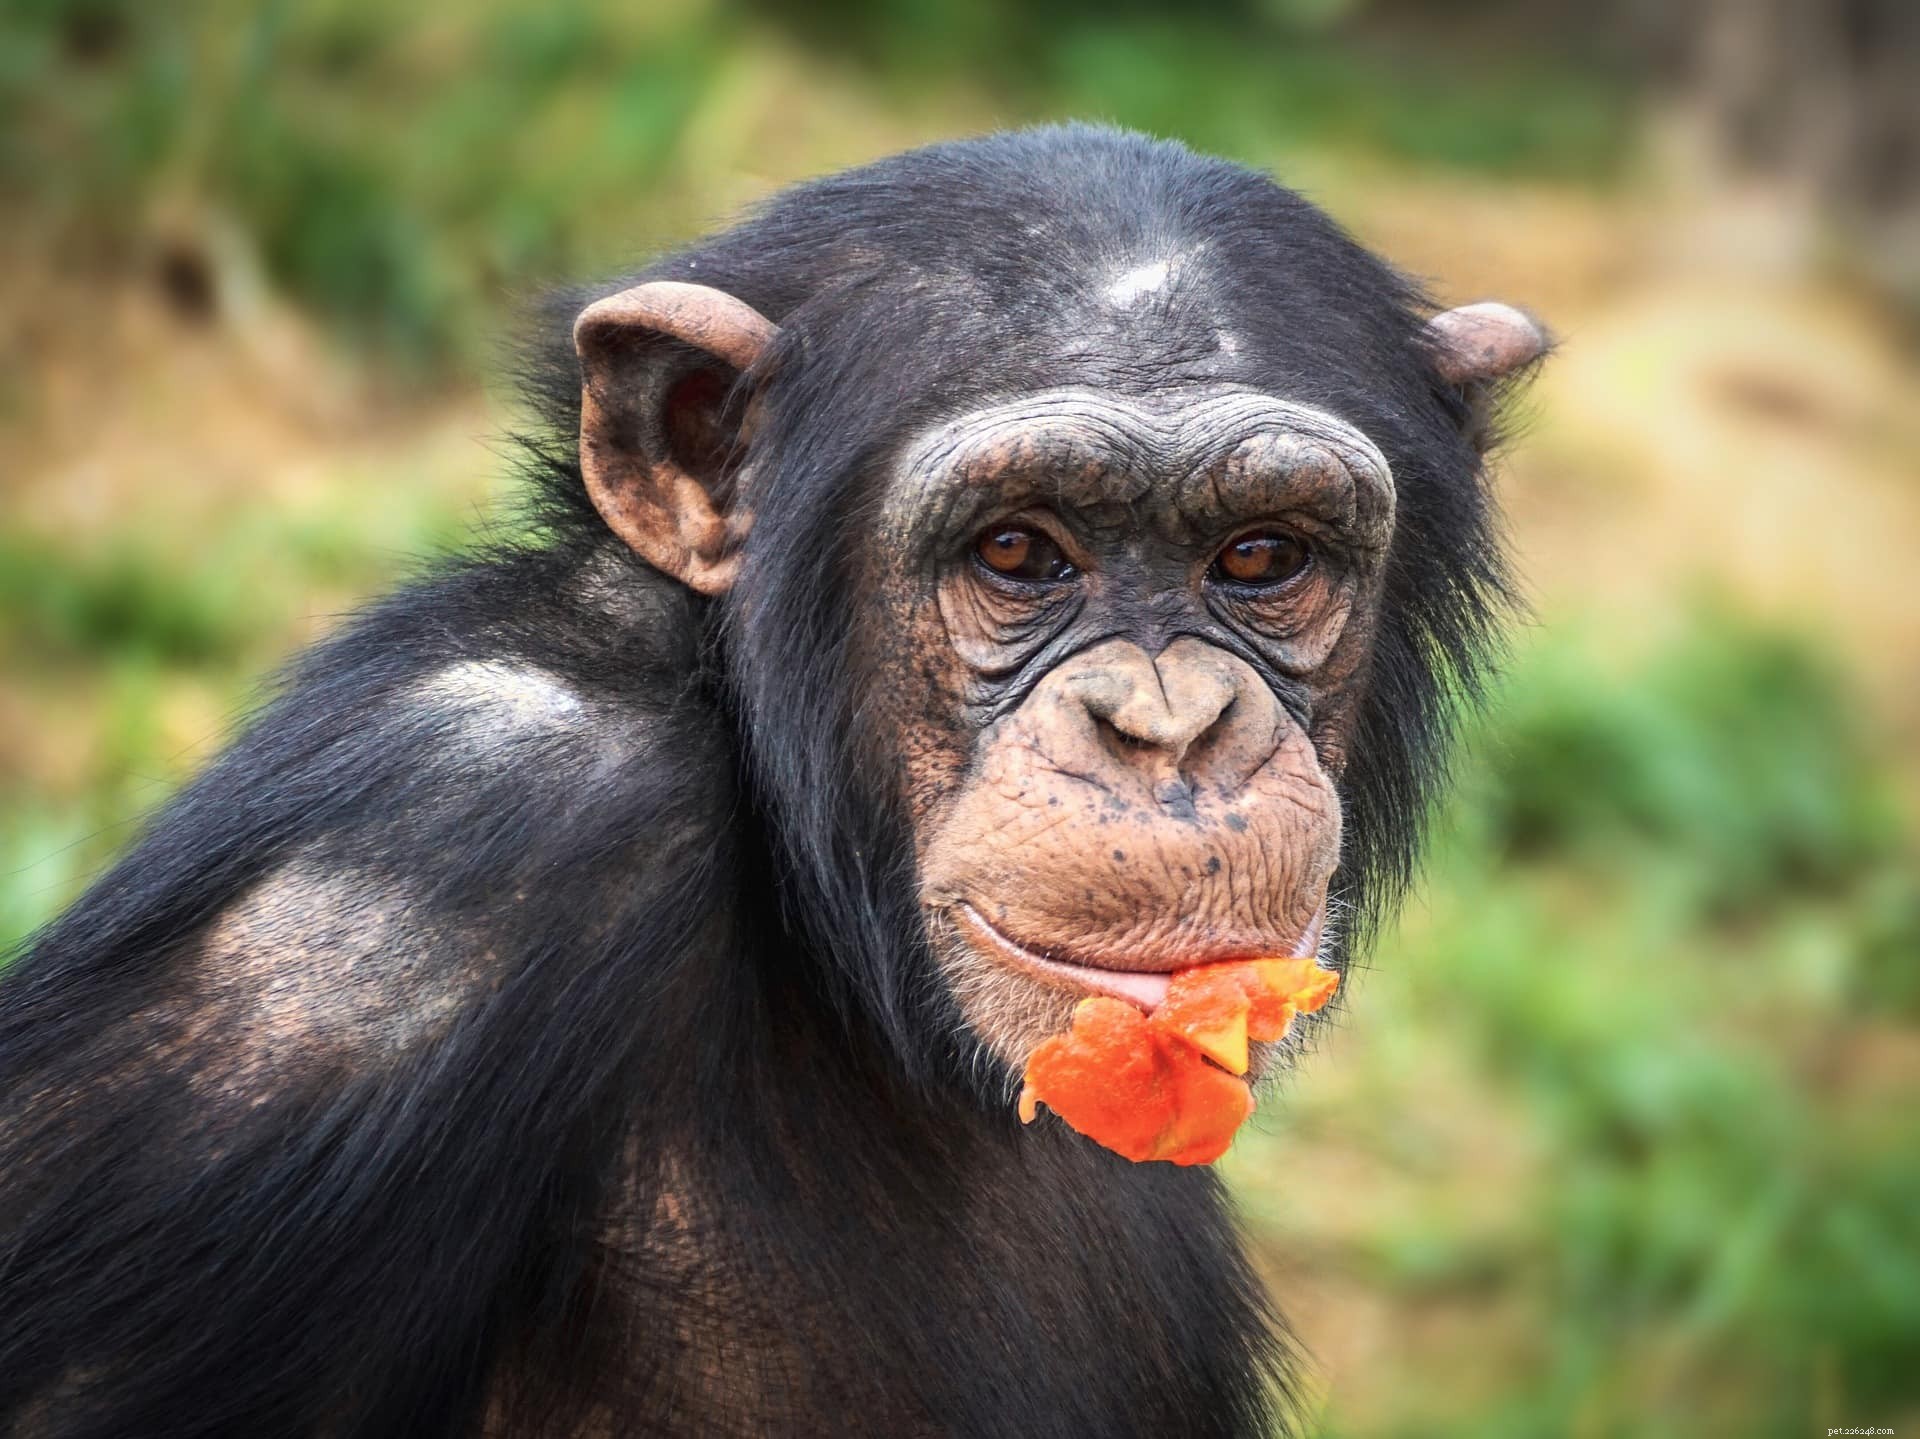 침팬지는 좋은 애완동물을 키울 수 있습니까? 알아야 할 사항!